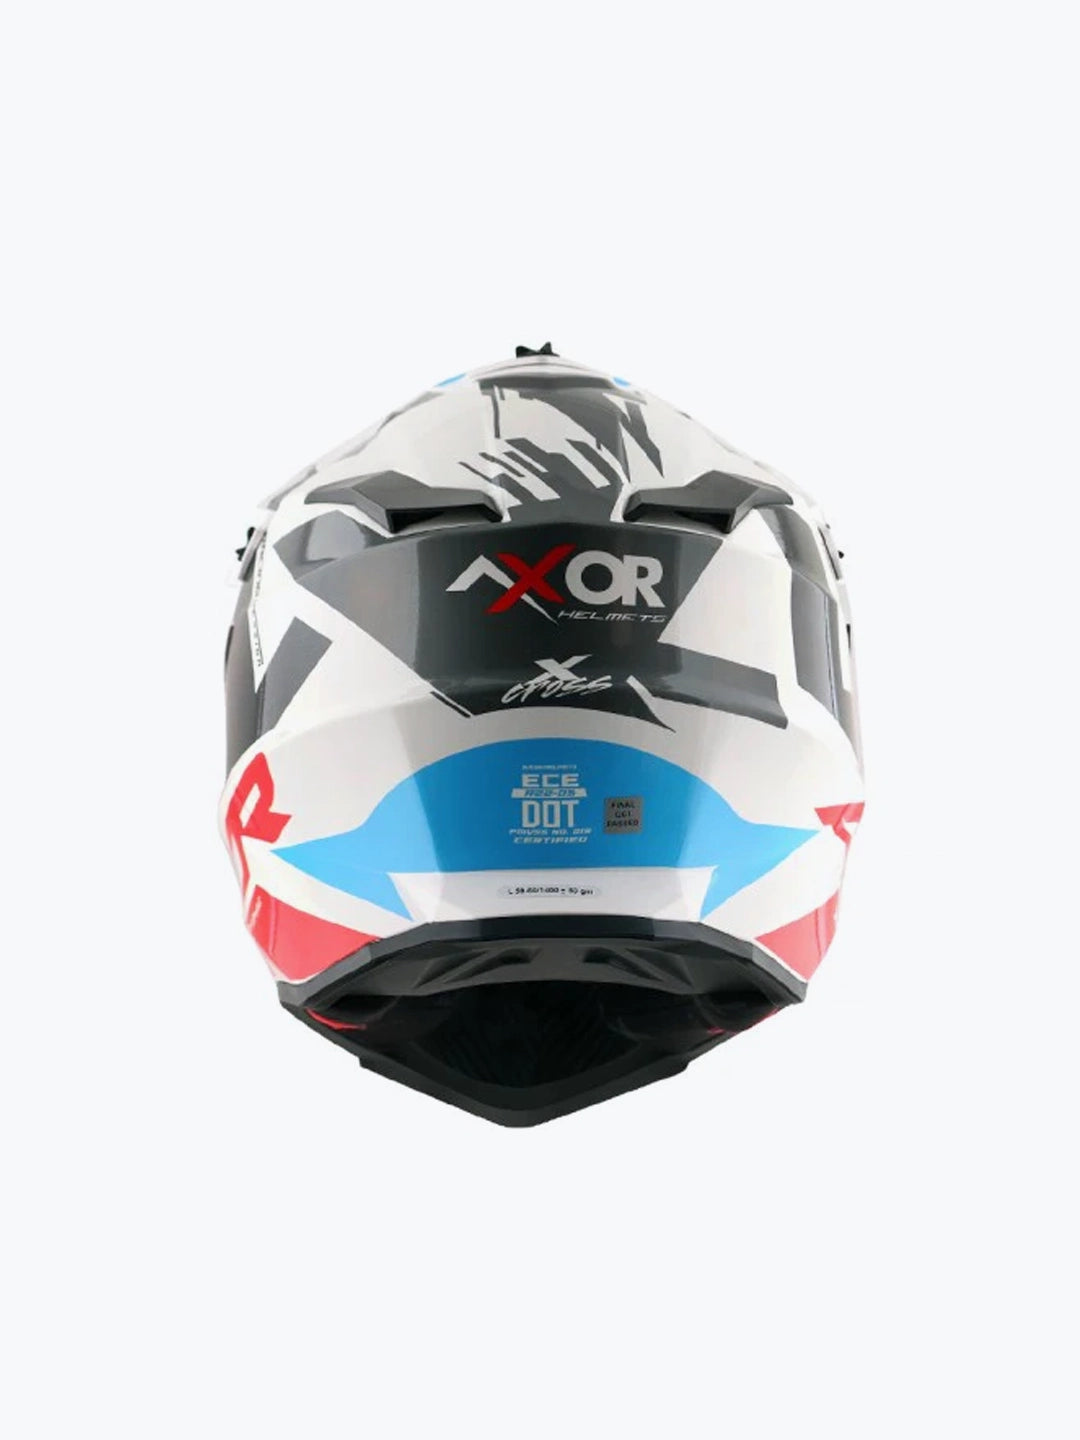 Axor X-Cross X1 White Red